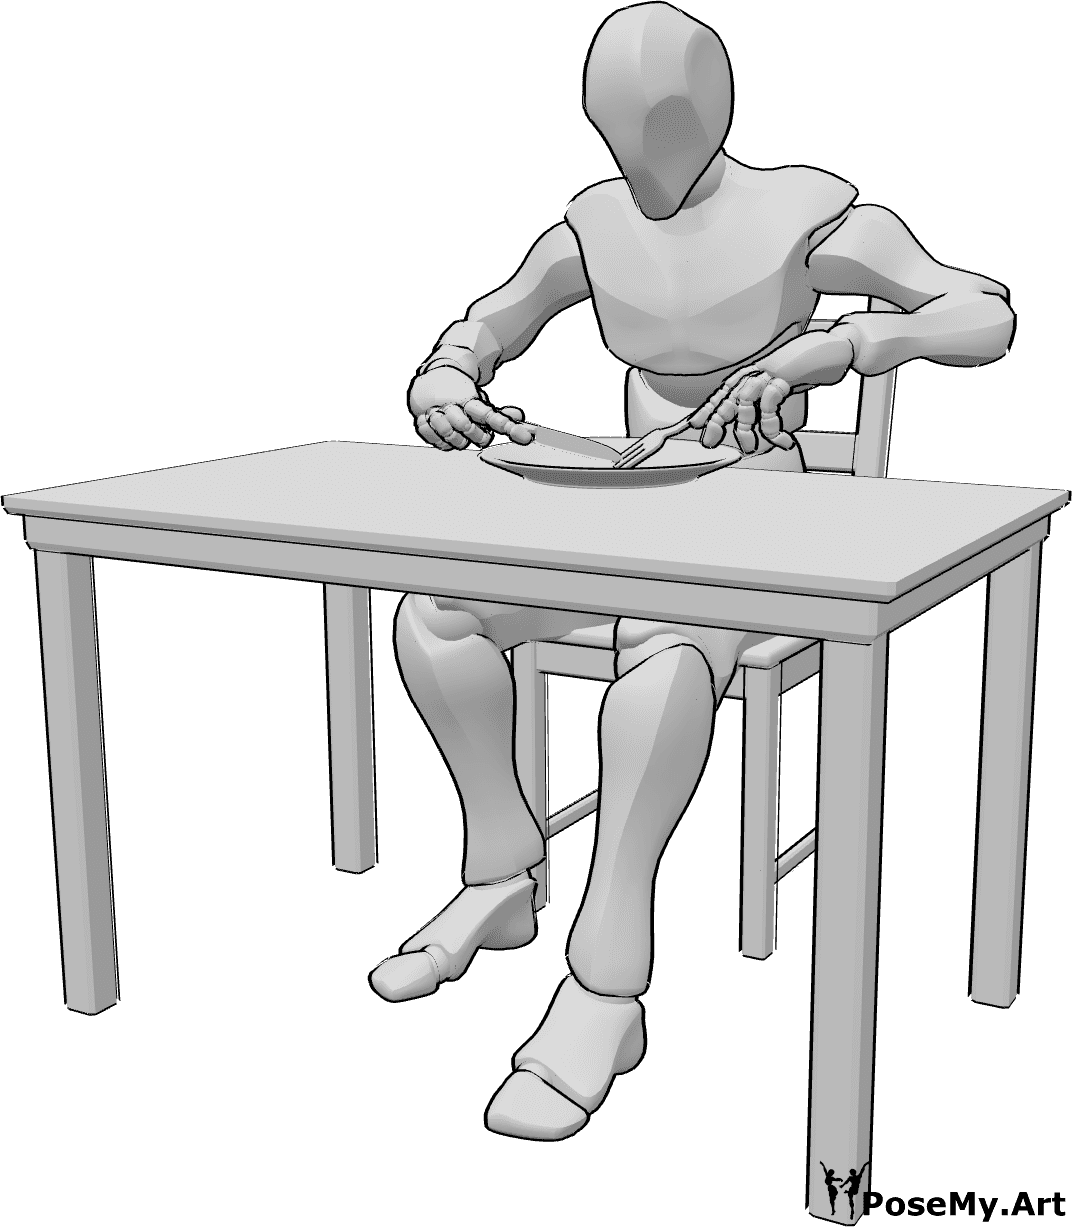 Posen-Referenz- Männliche Ess-Pose - Mann sitzt am Esstisch und isst, benutzt Gabel und Messer und isst Referenz